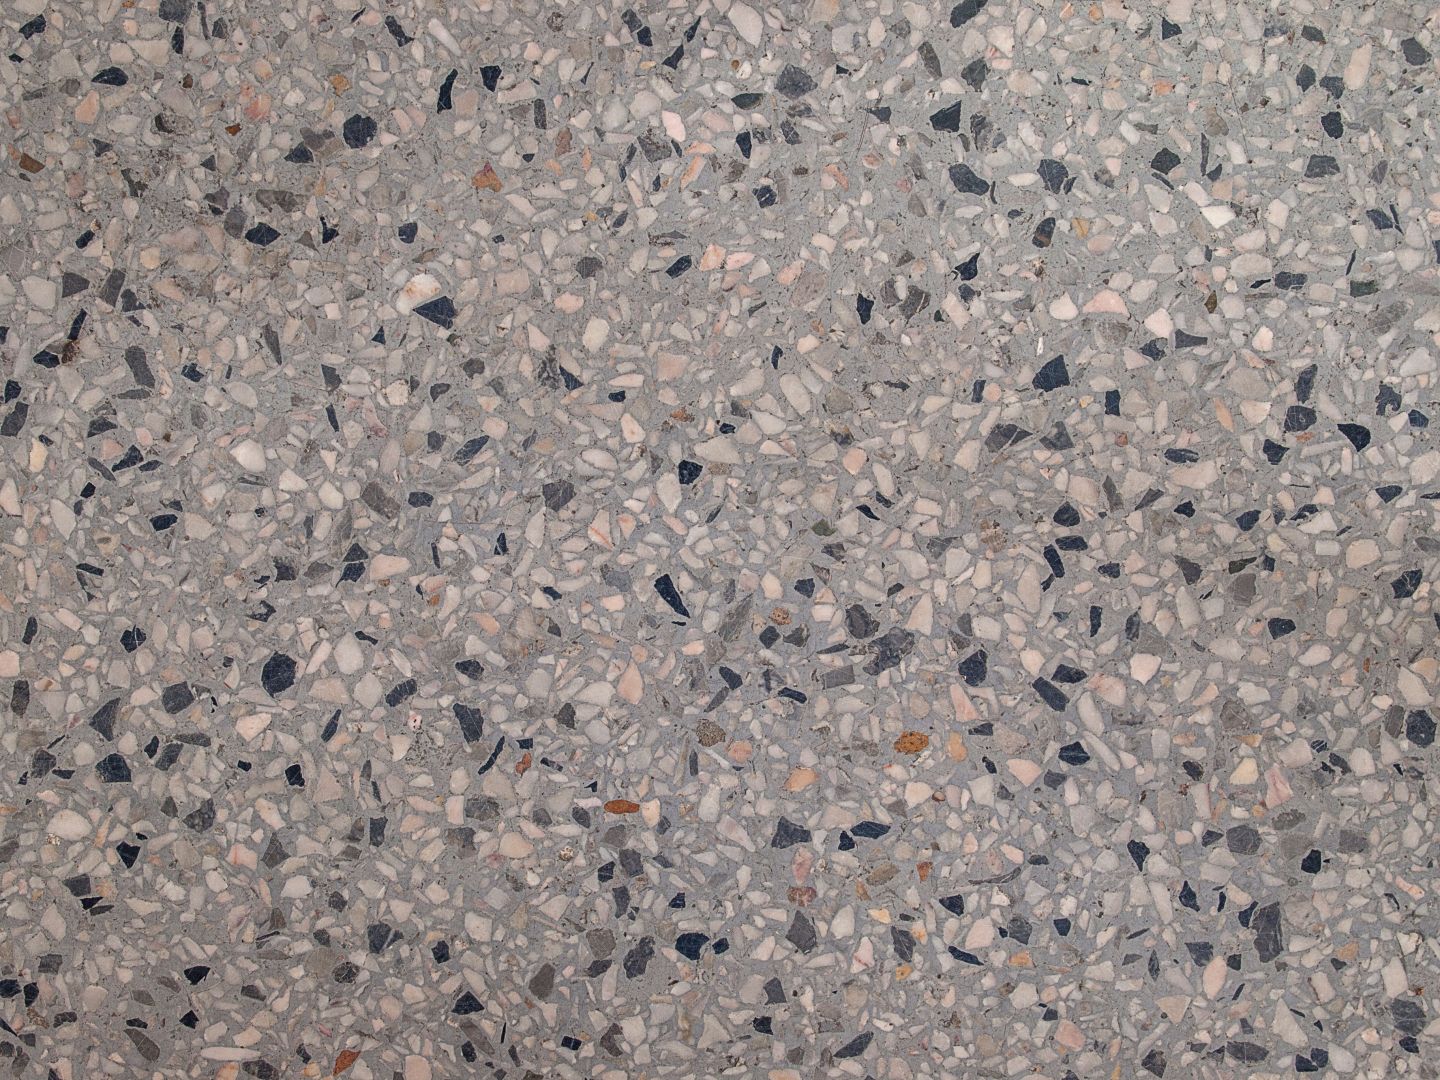 Broušení a frézování betonu jako příprava před pokládkou finální podlahy, 83 m2, Pravlov